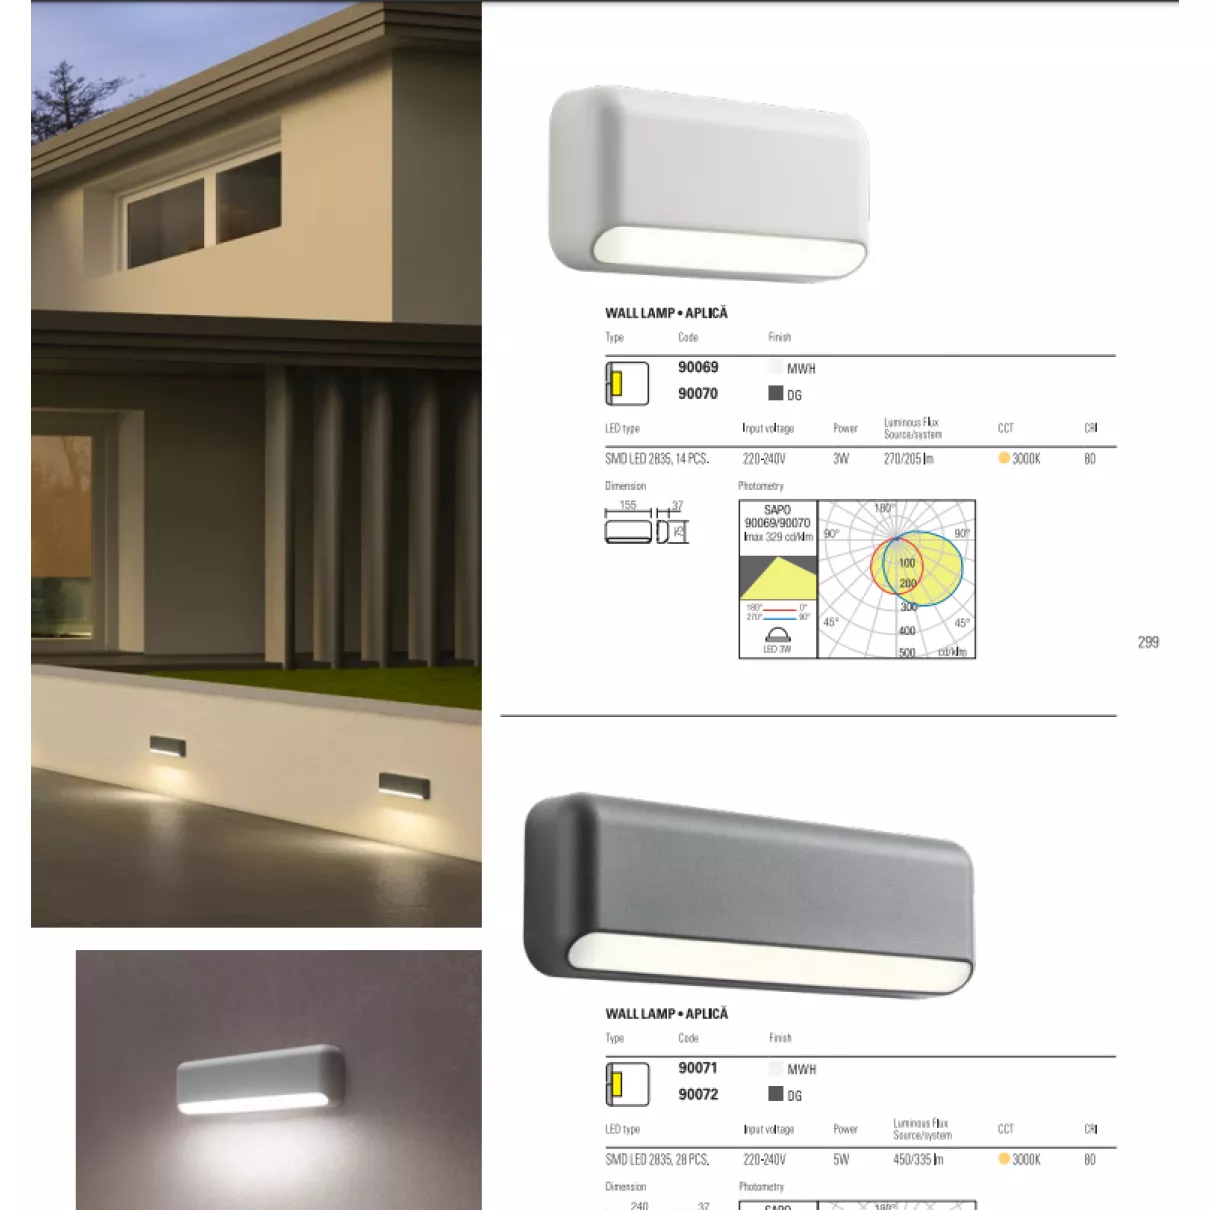 SAPO - Kültéri LED fali és lépcső világító, 270lm - Redo-90069